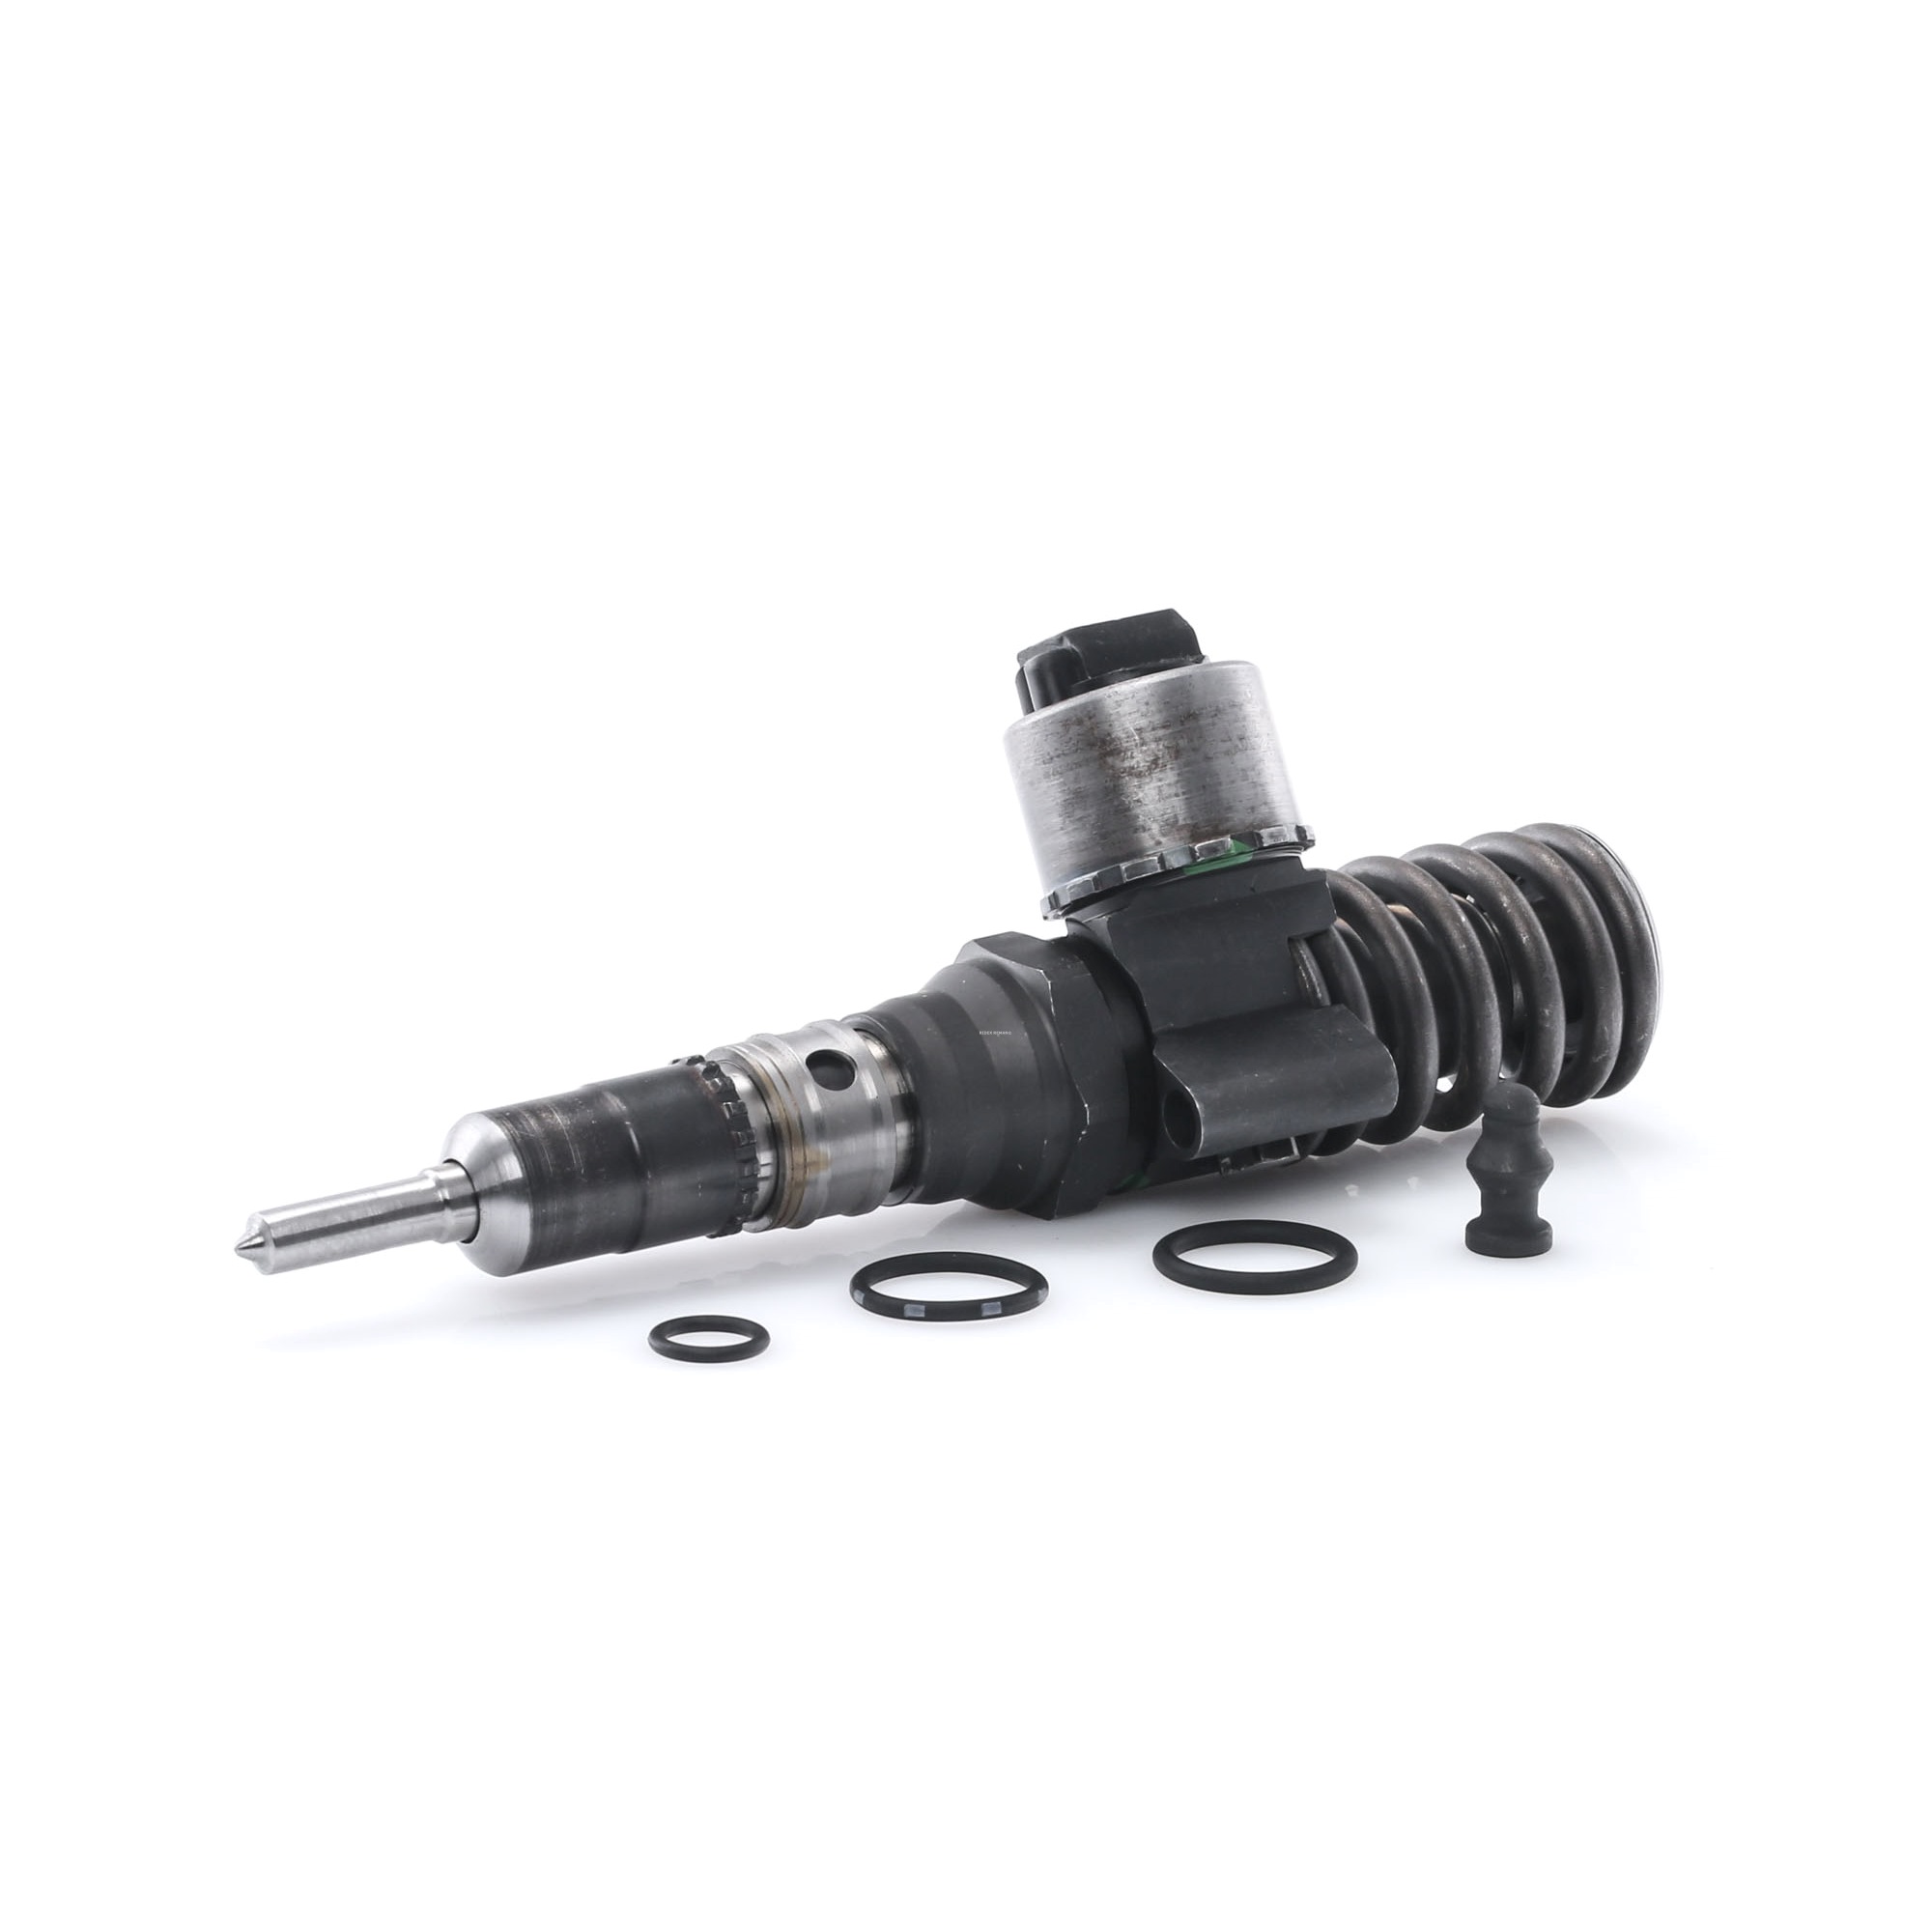 RIDEX REMAN Pump and Nozzle Unit 3930I0032R buy